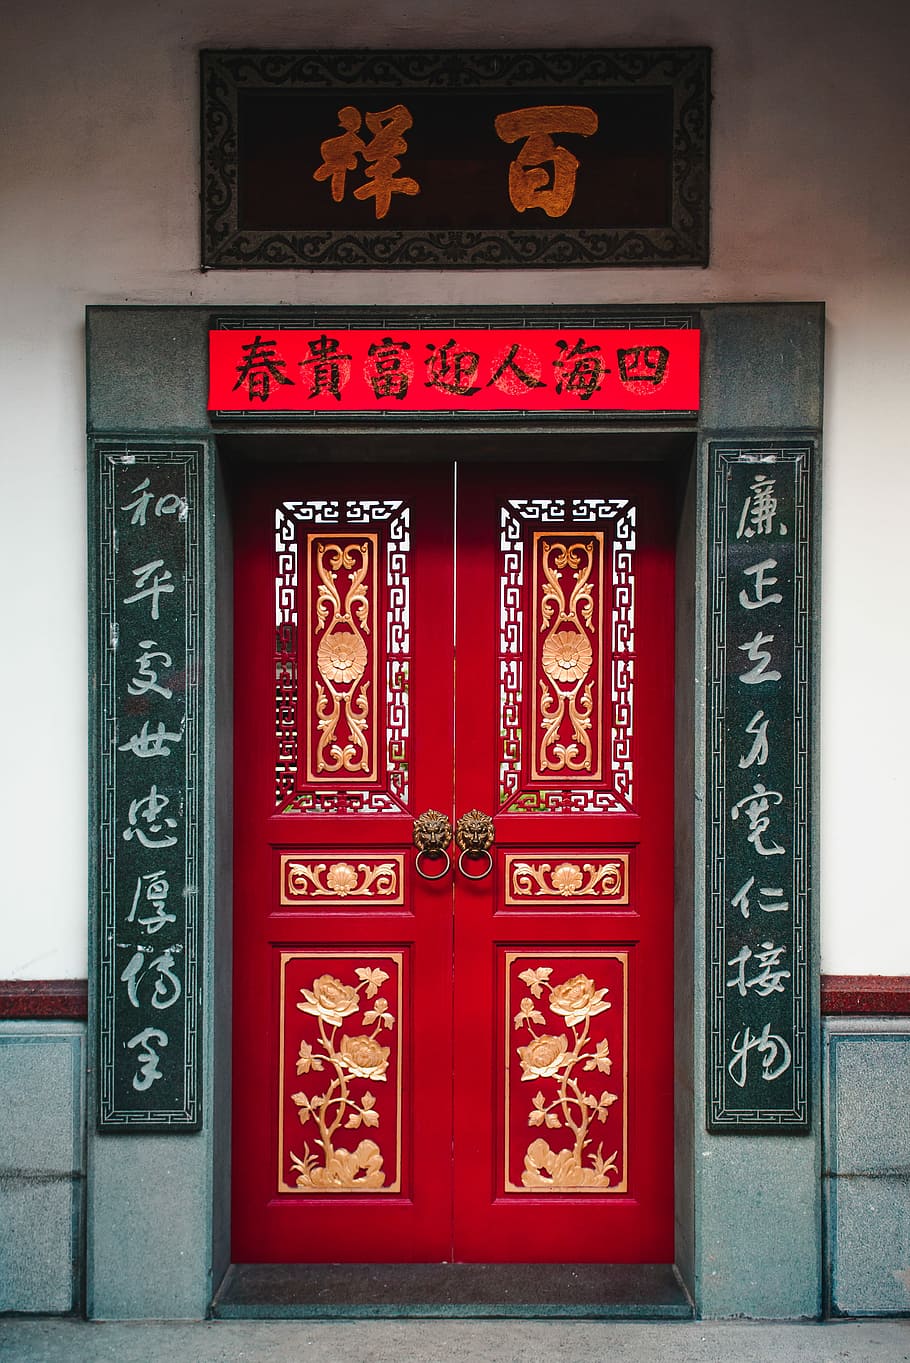 view of Kanji script doors, red wooden french door, doorway, entrance